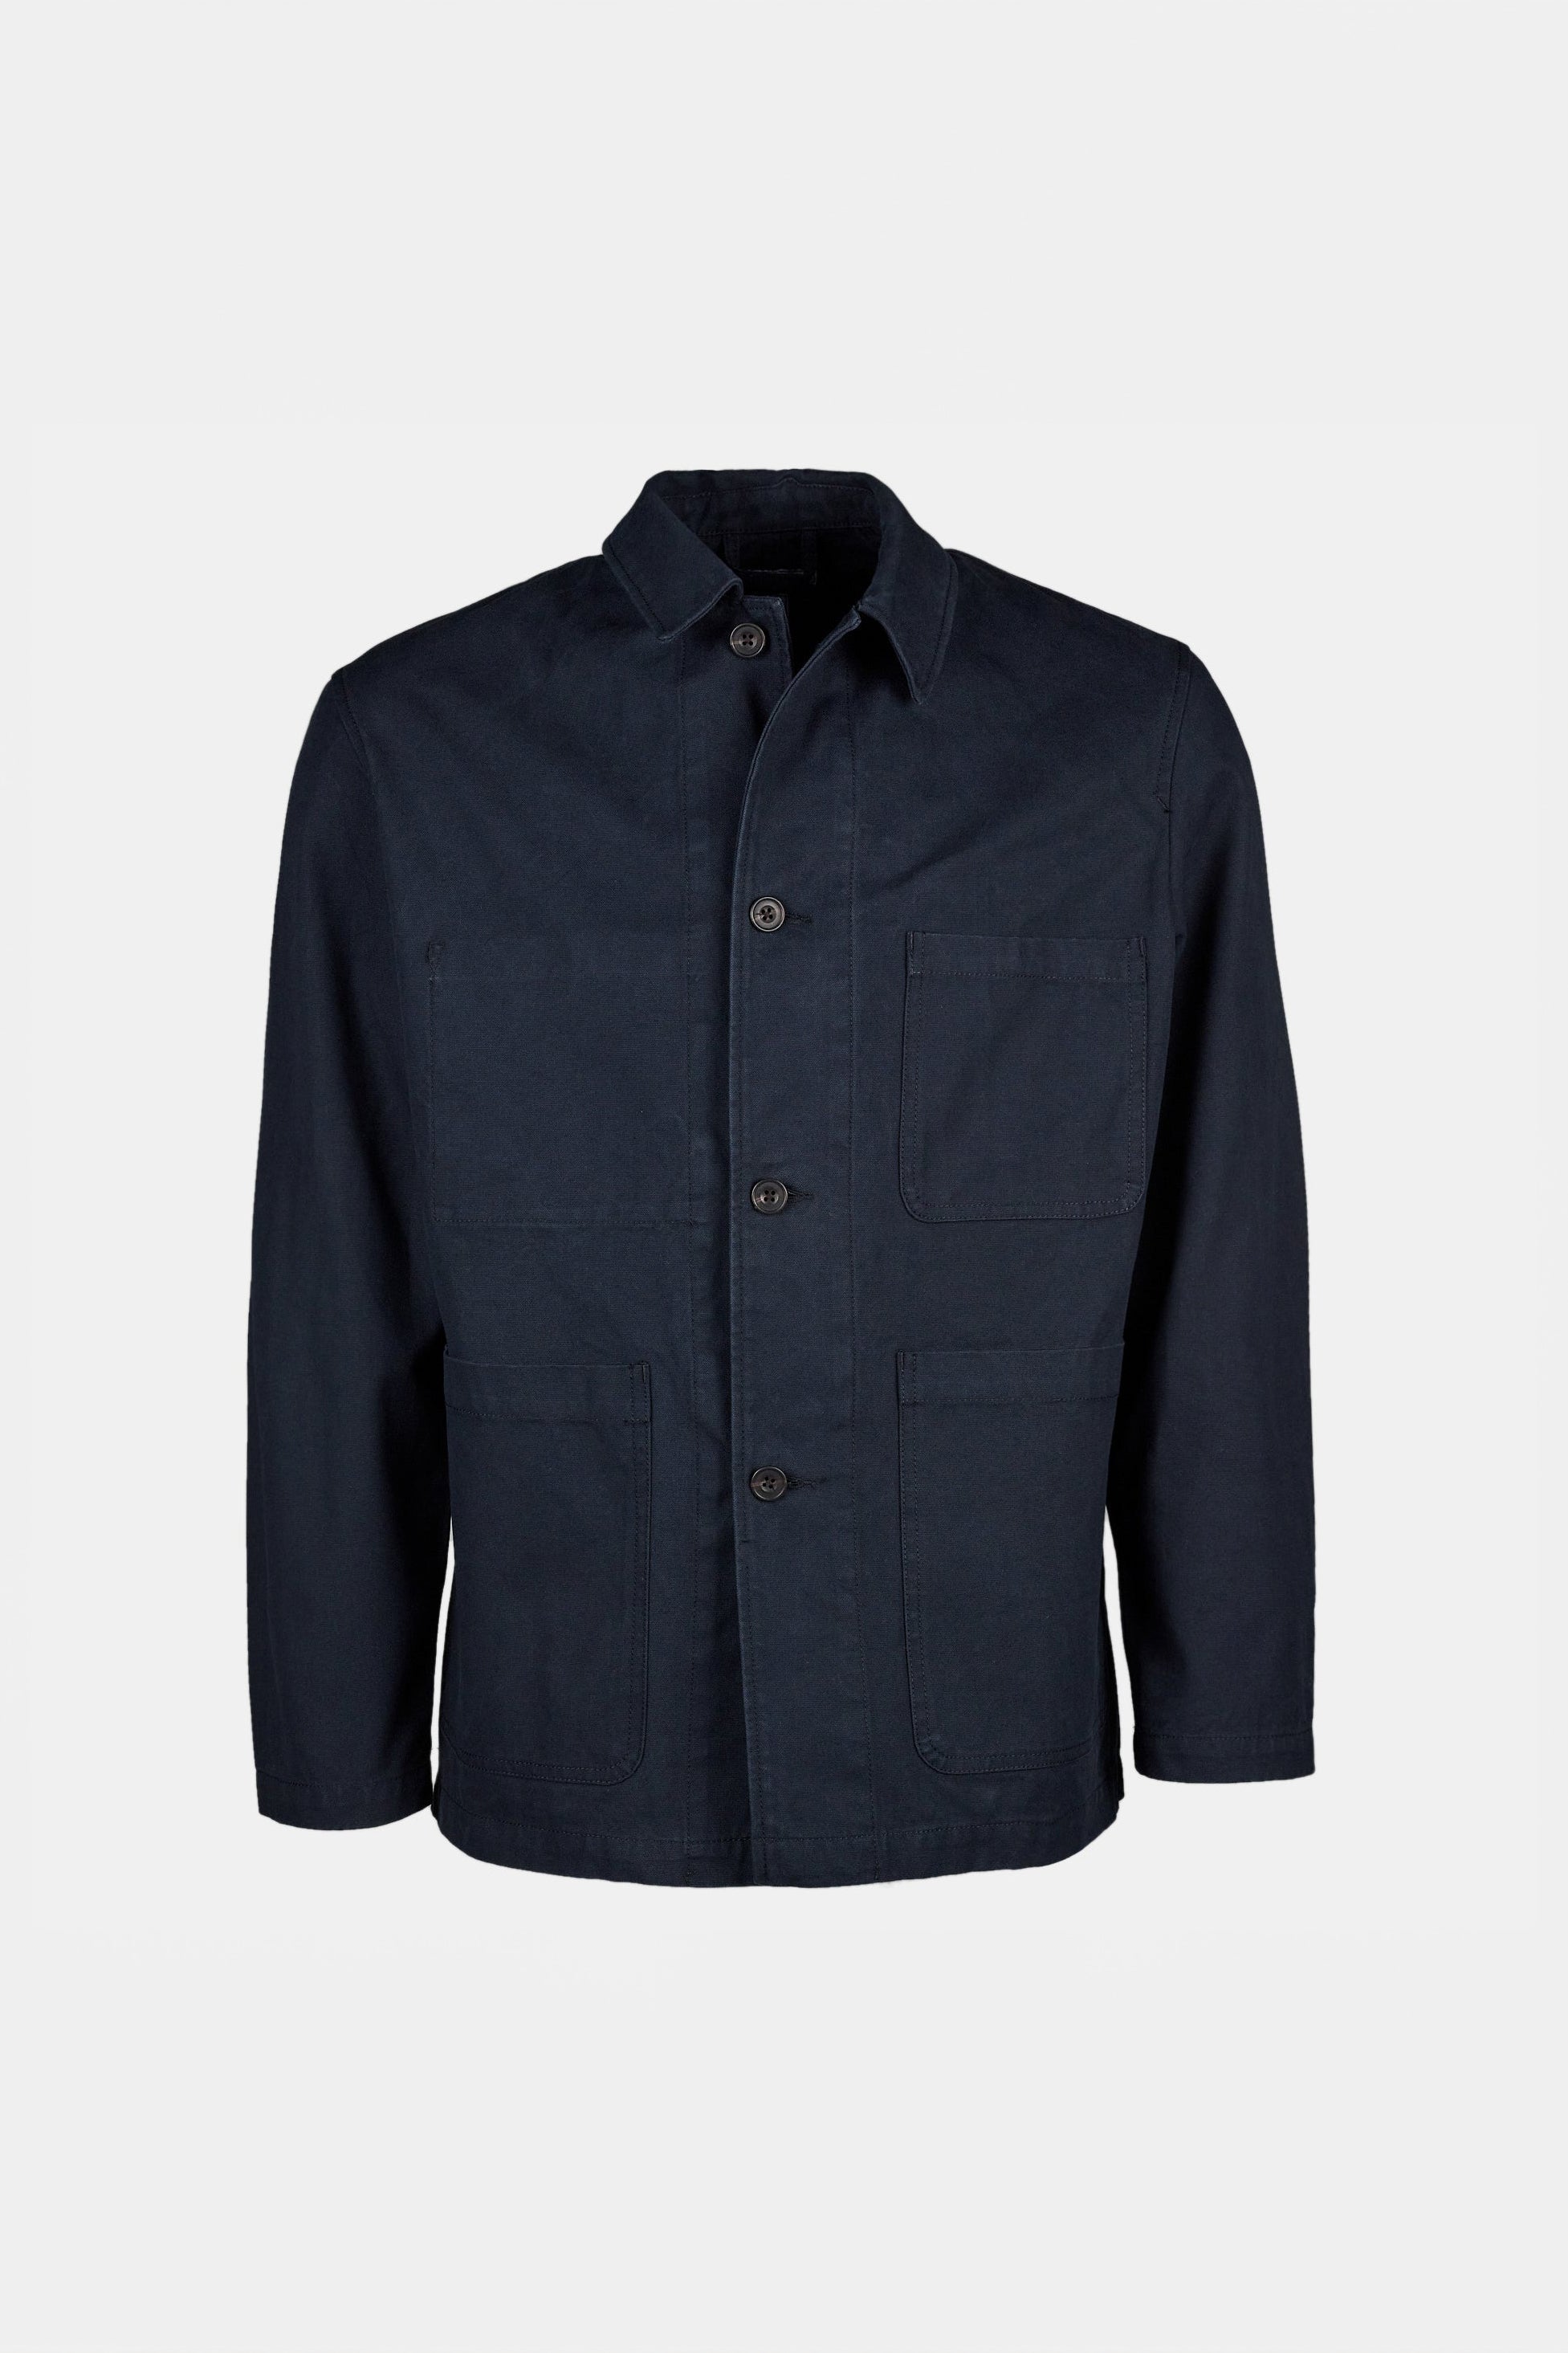 Men's Chore Jacket - Dark Navy - Community Clothing